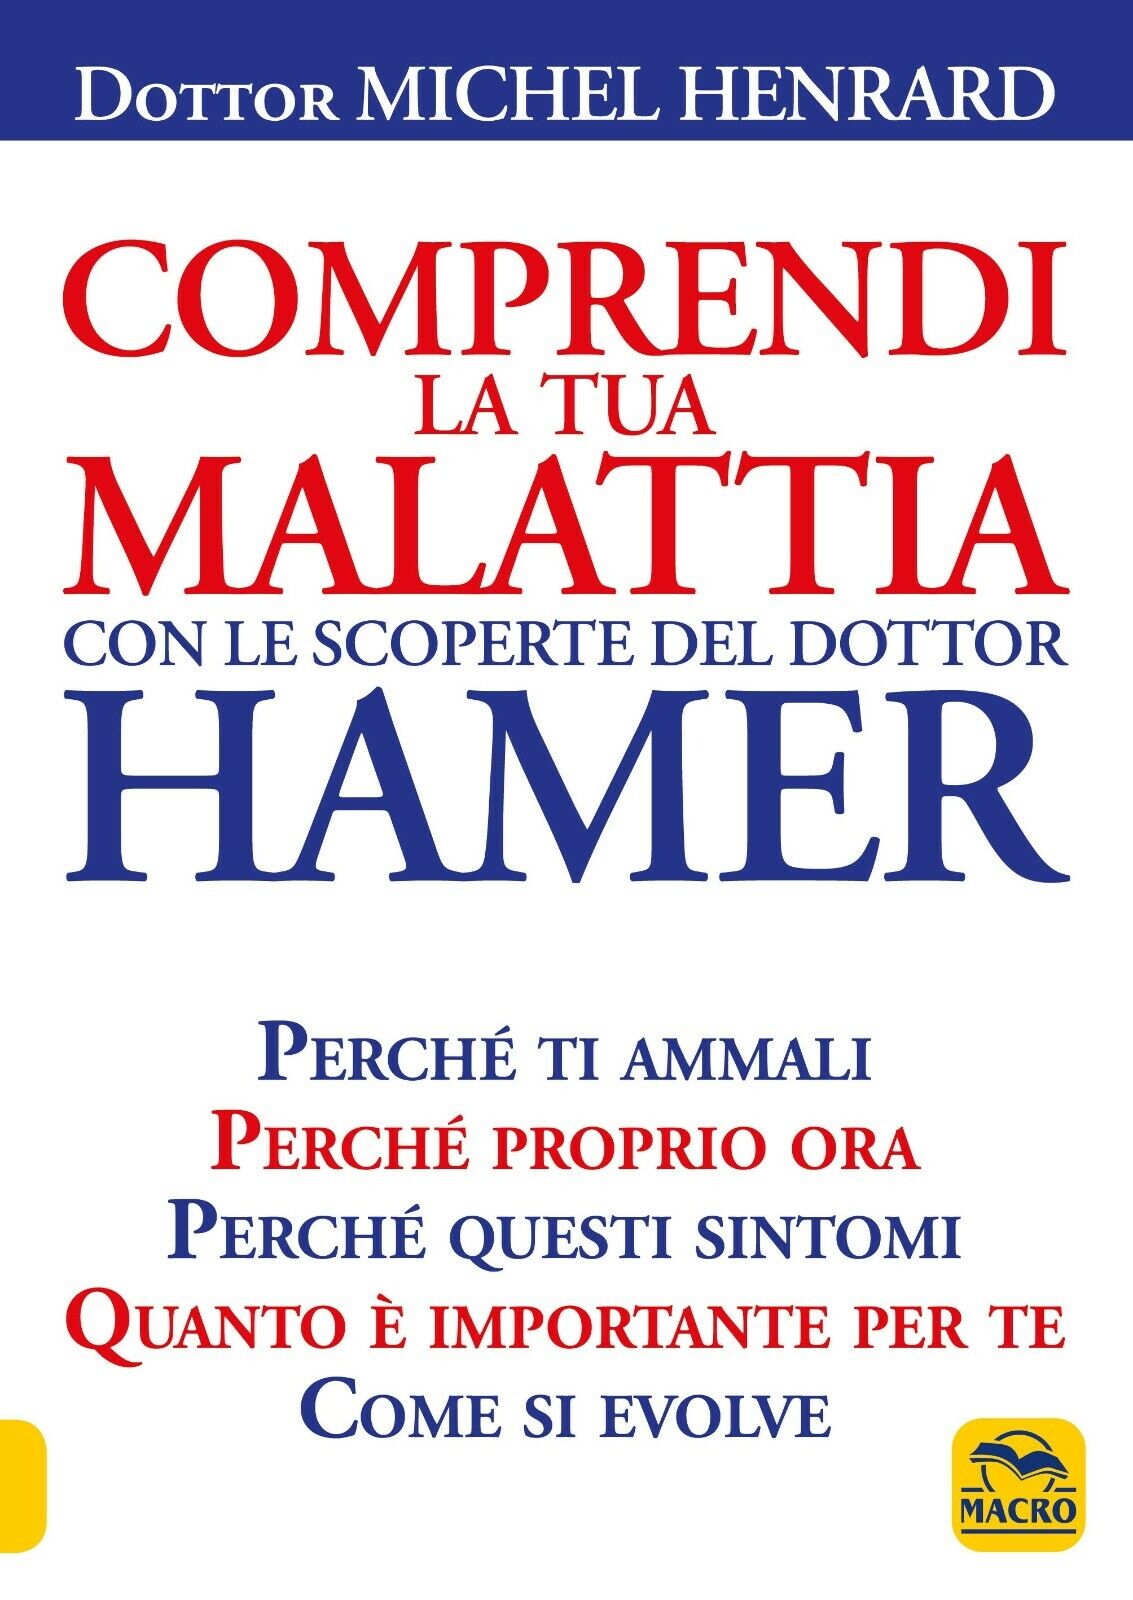 Comprendi la tua malattia con le scoperte del dottor Hamer di Michel Henrard,  2